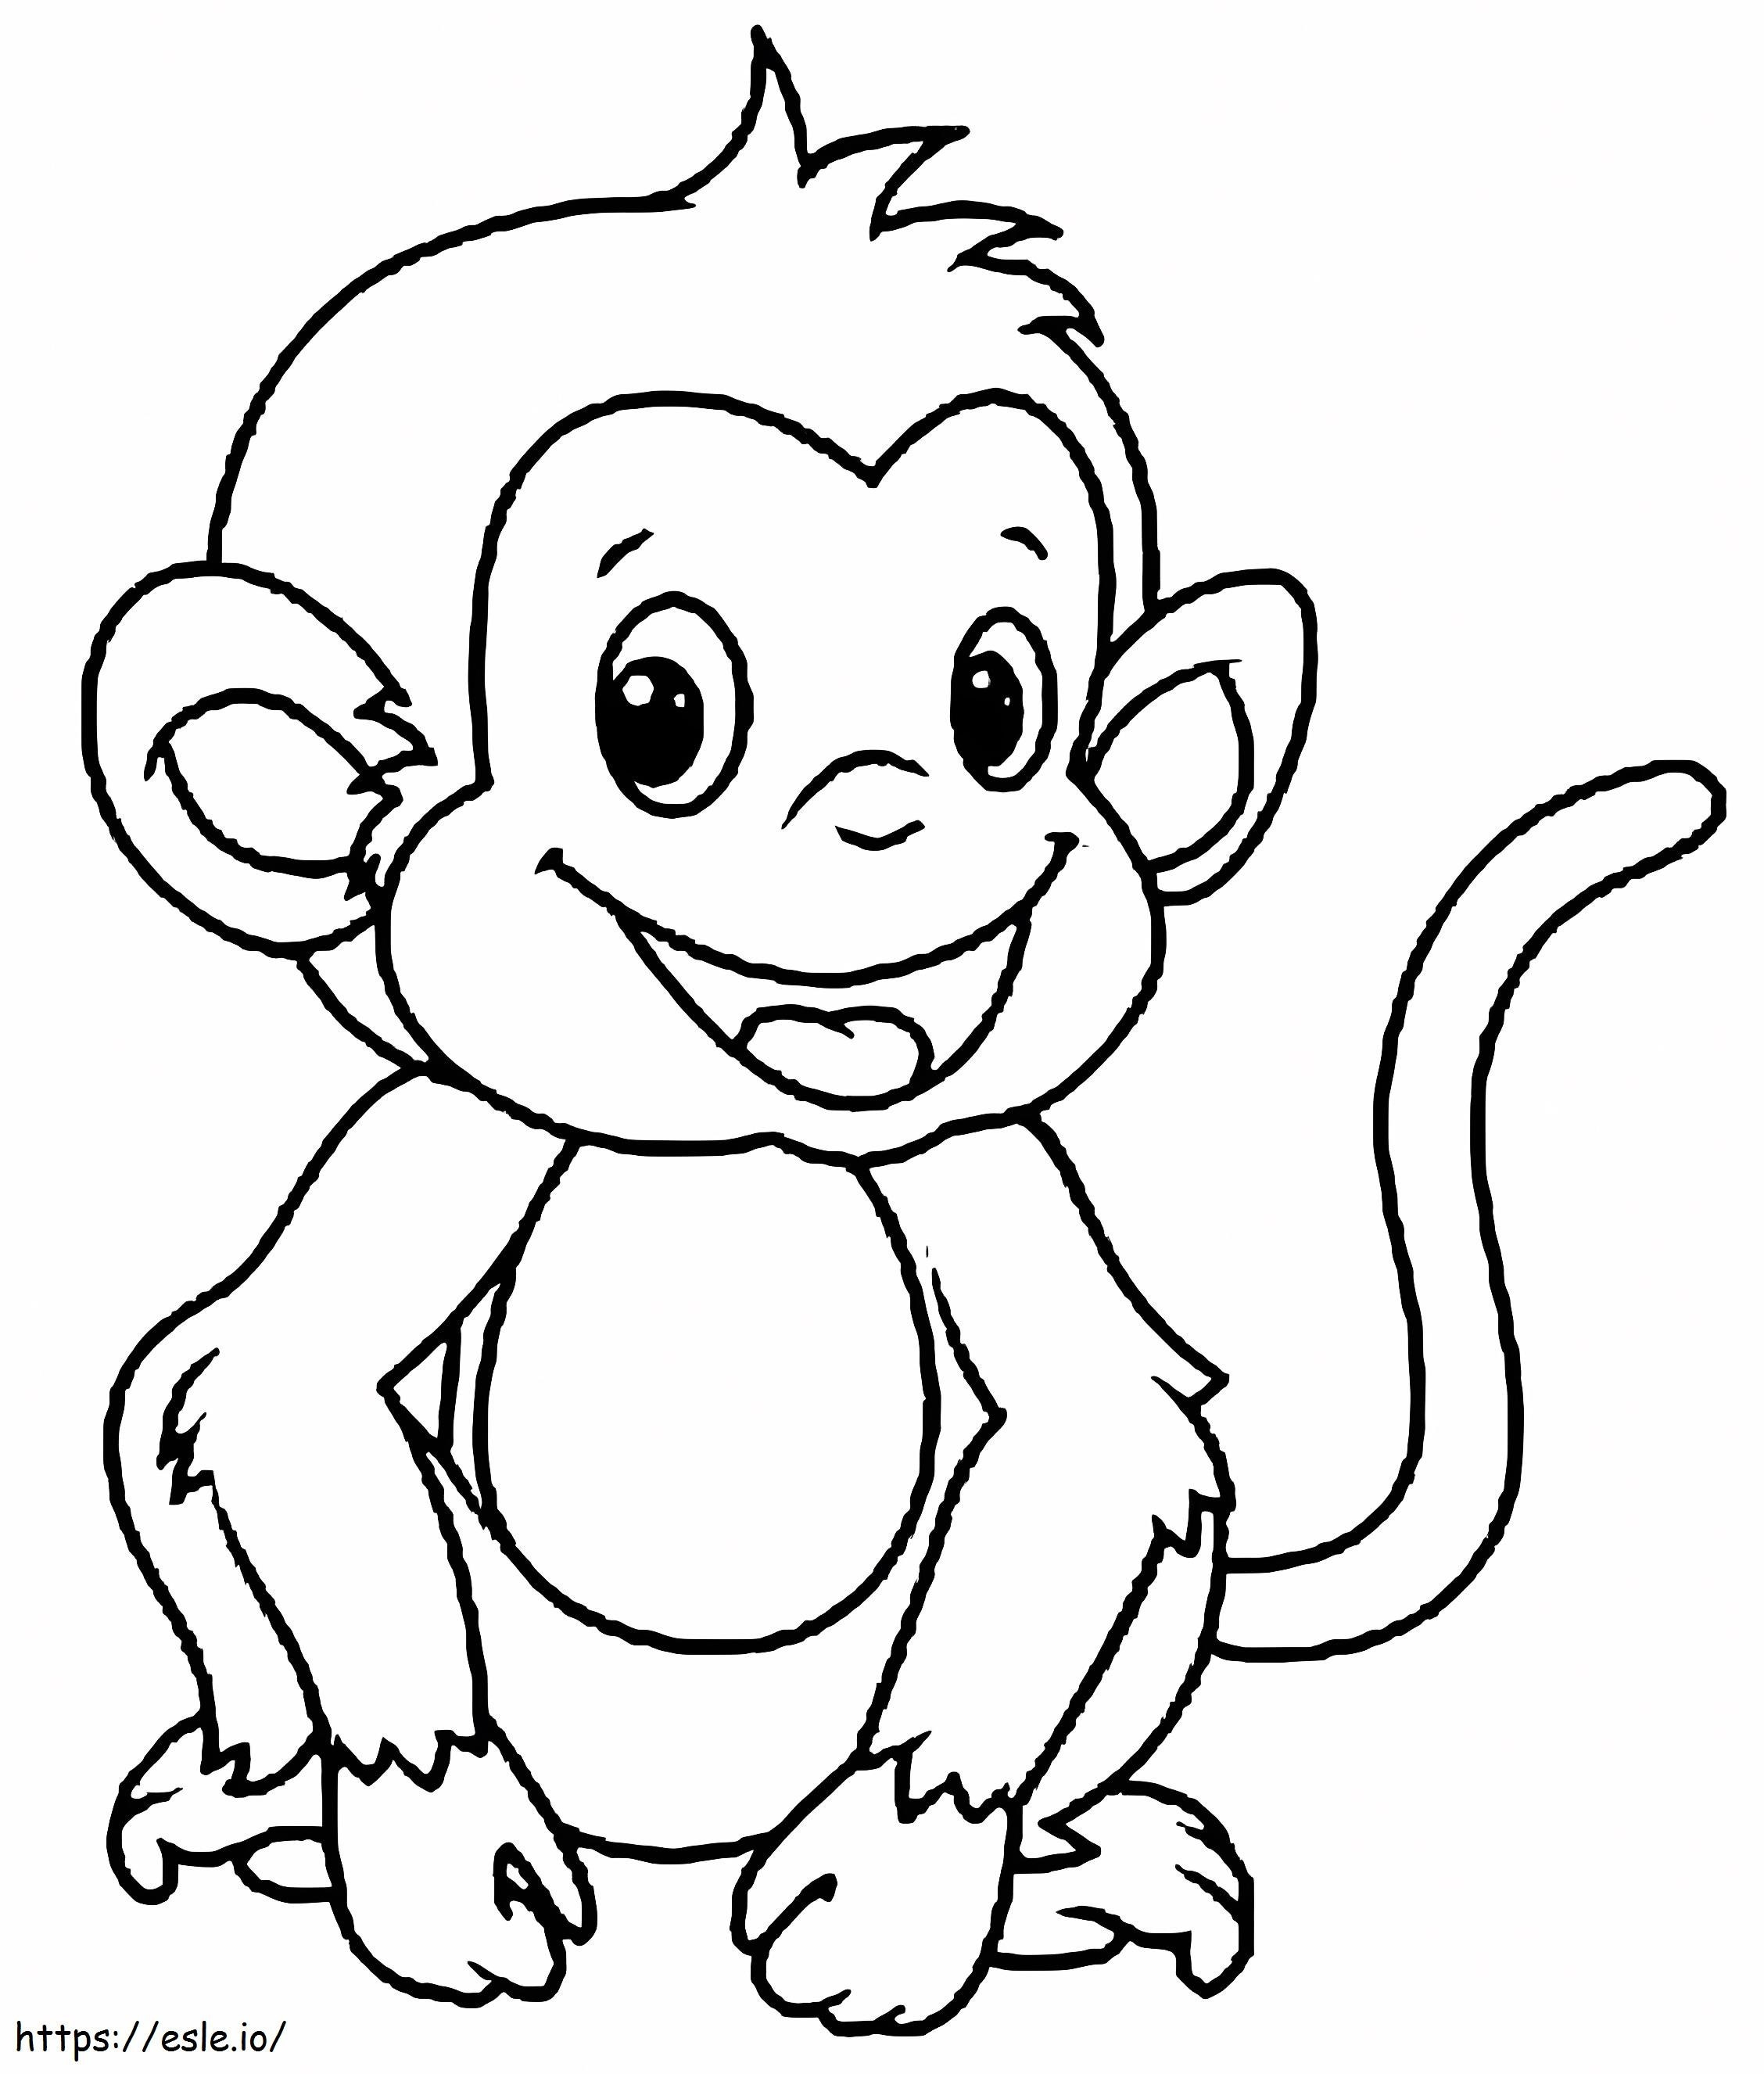 Lustige Affenzeichnung ausmalbilder